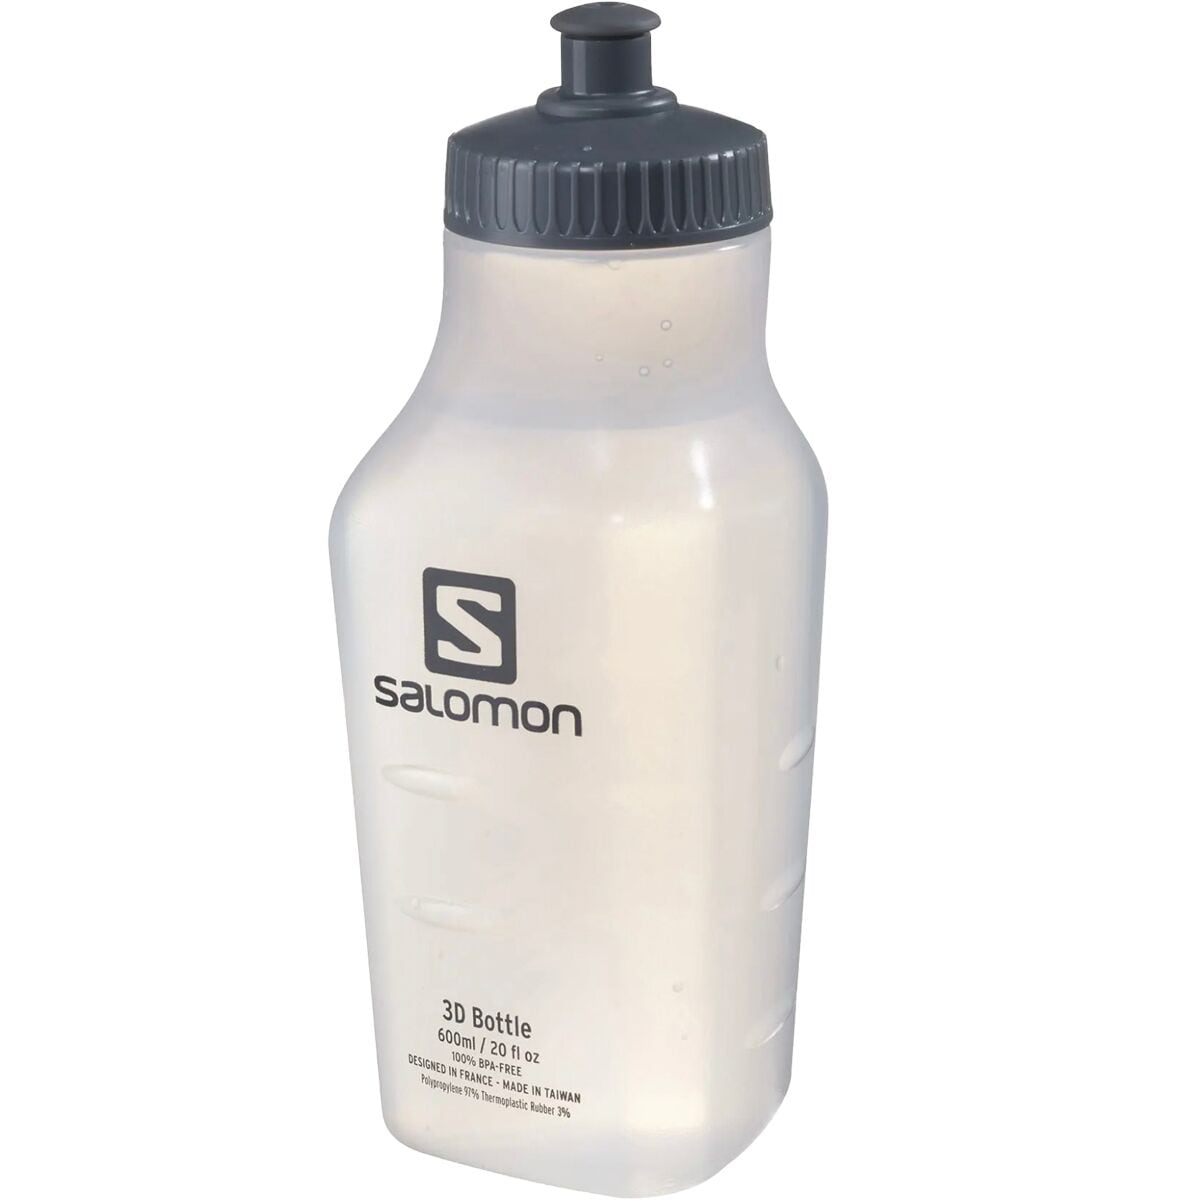 Salomon 3D 600ml Water Bottle